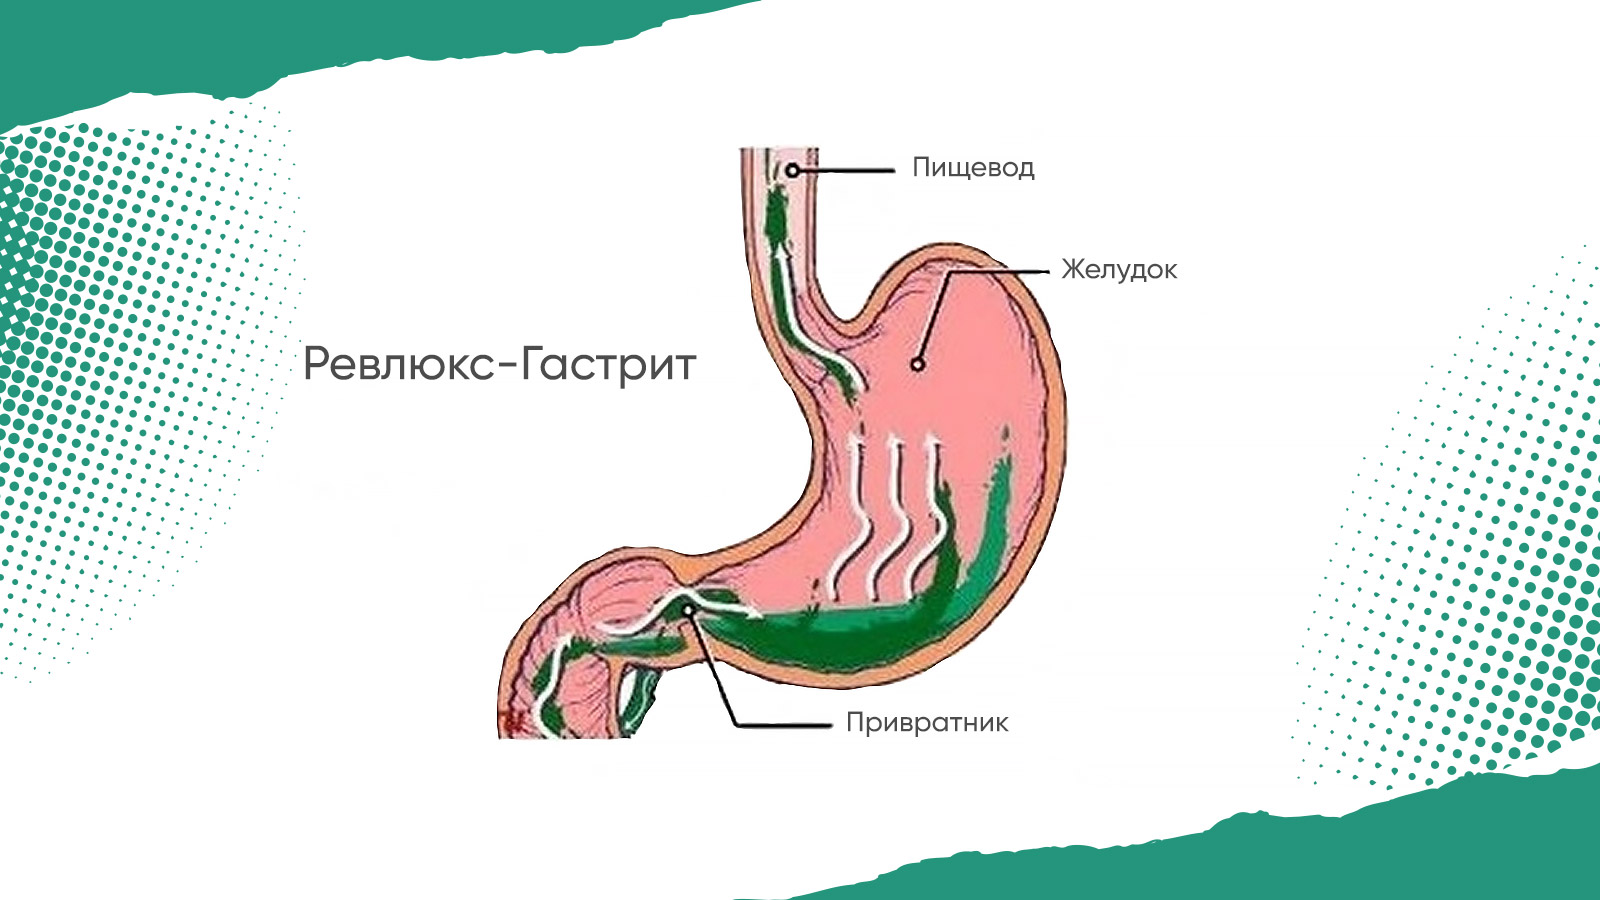 Лечение забросов в пищевод. Гастрит рефлюкс эзофагит. Дуоденальный гастрит рефлюкс. Что такое дуодено-гастральный рефлюкс желудка. Рефлюкс-эзофагит симптомы язык.